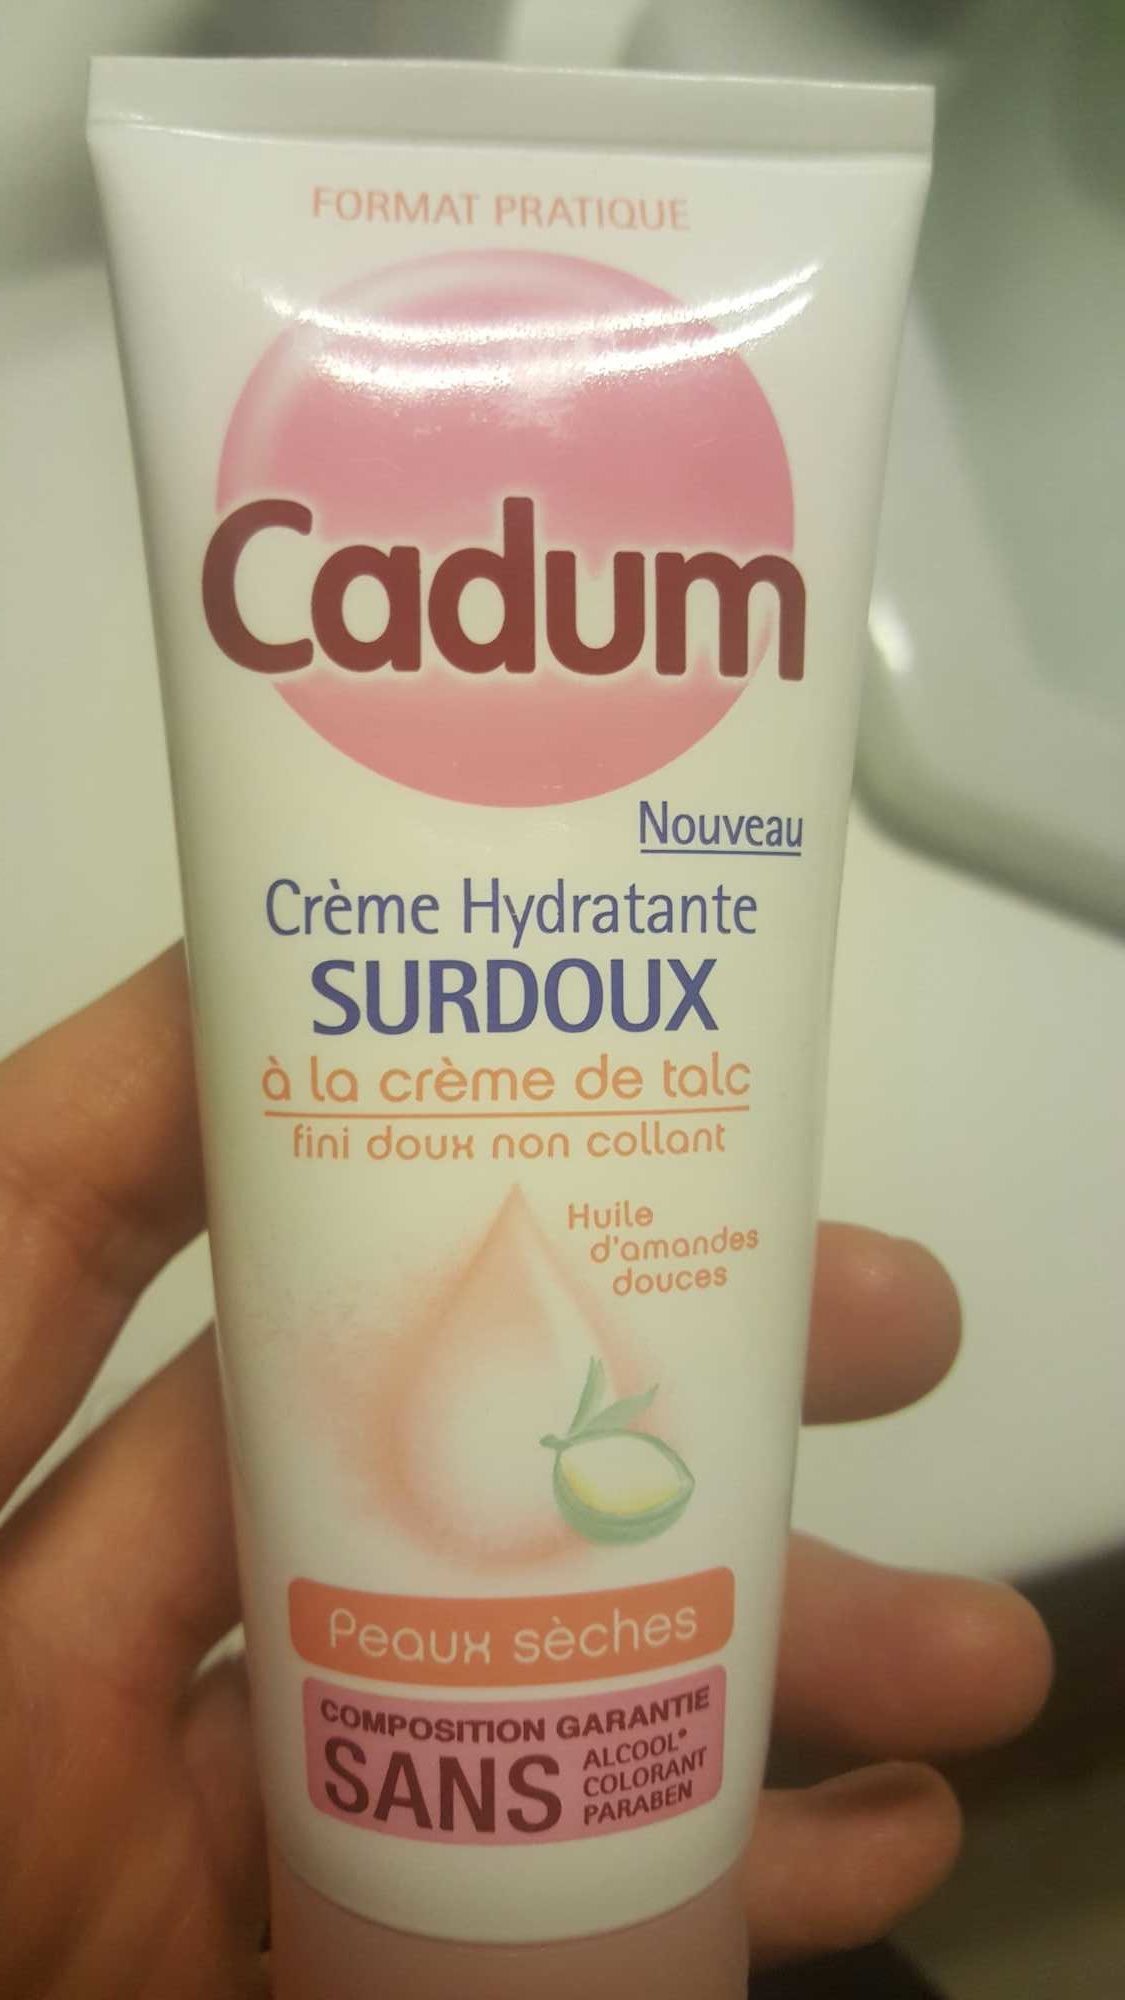 Crème hydratante surdoux à la crème de talc peaux sèches - Продукт - fr